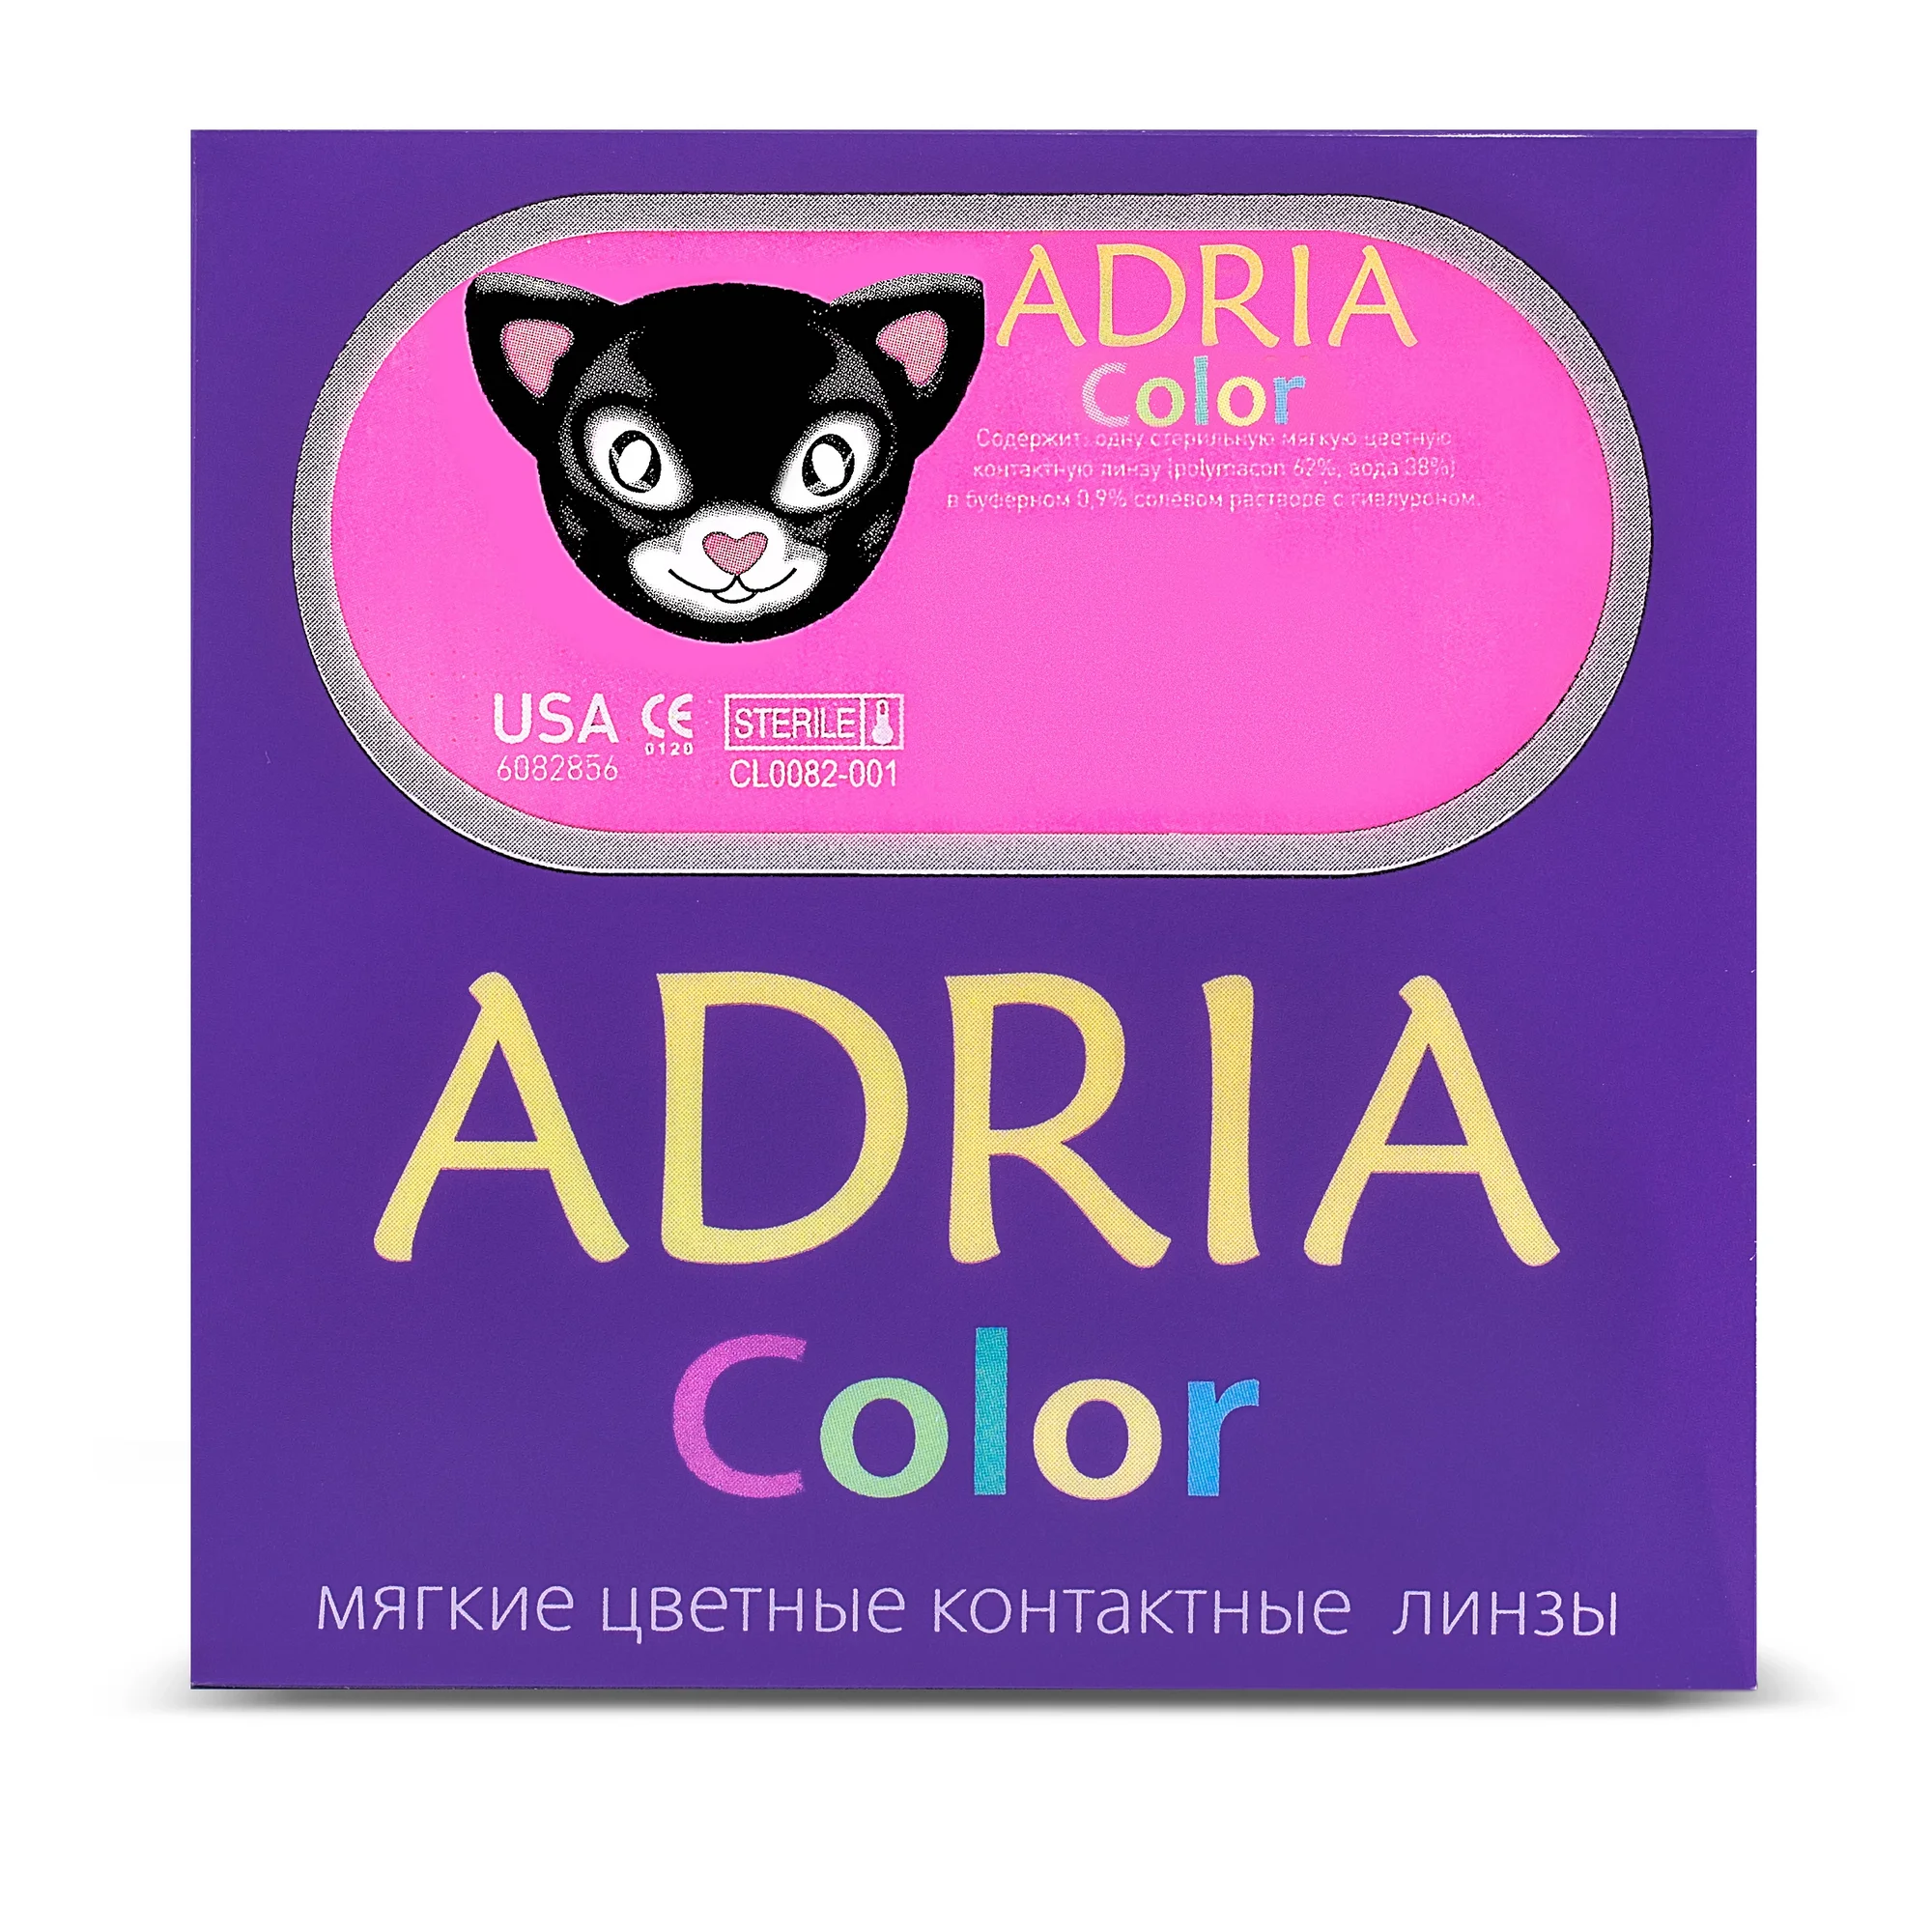 COLOR BOX ADRIA Color 2 Tone Hazel (светло-карий)